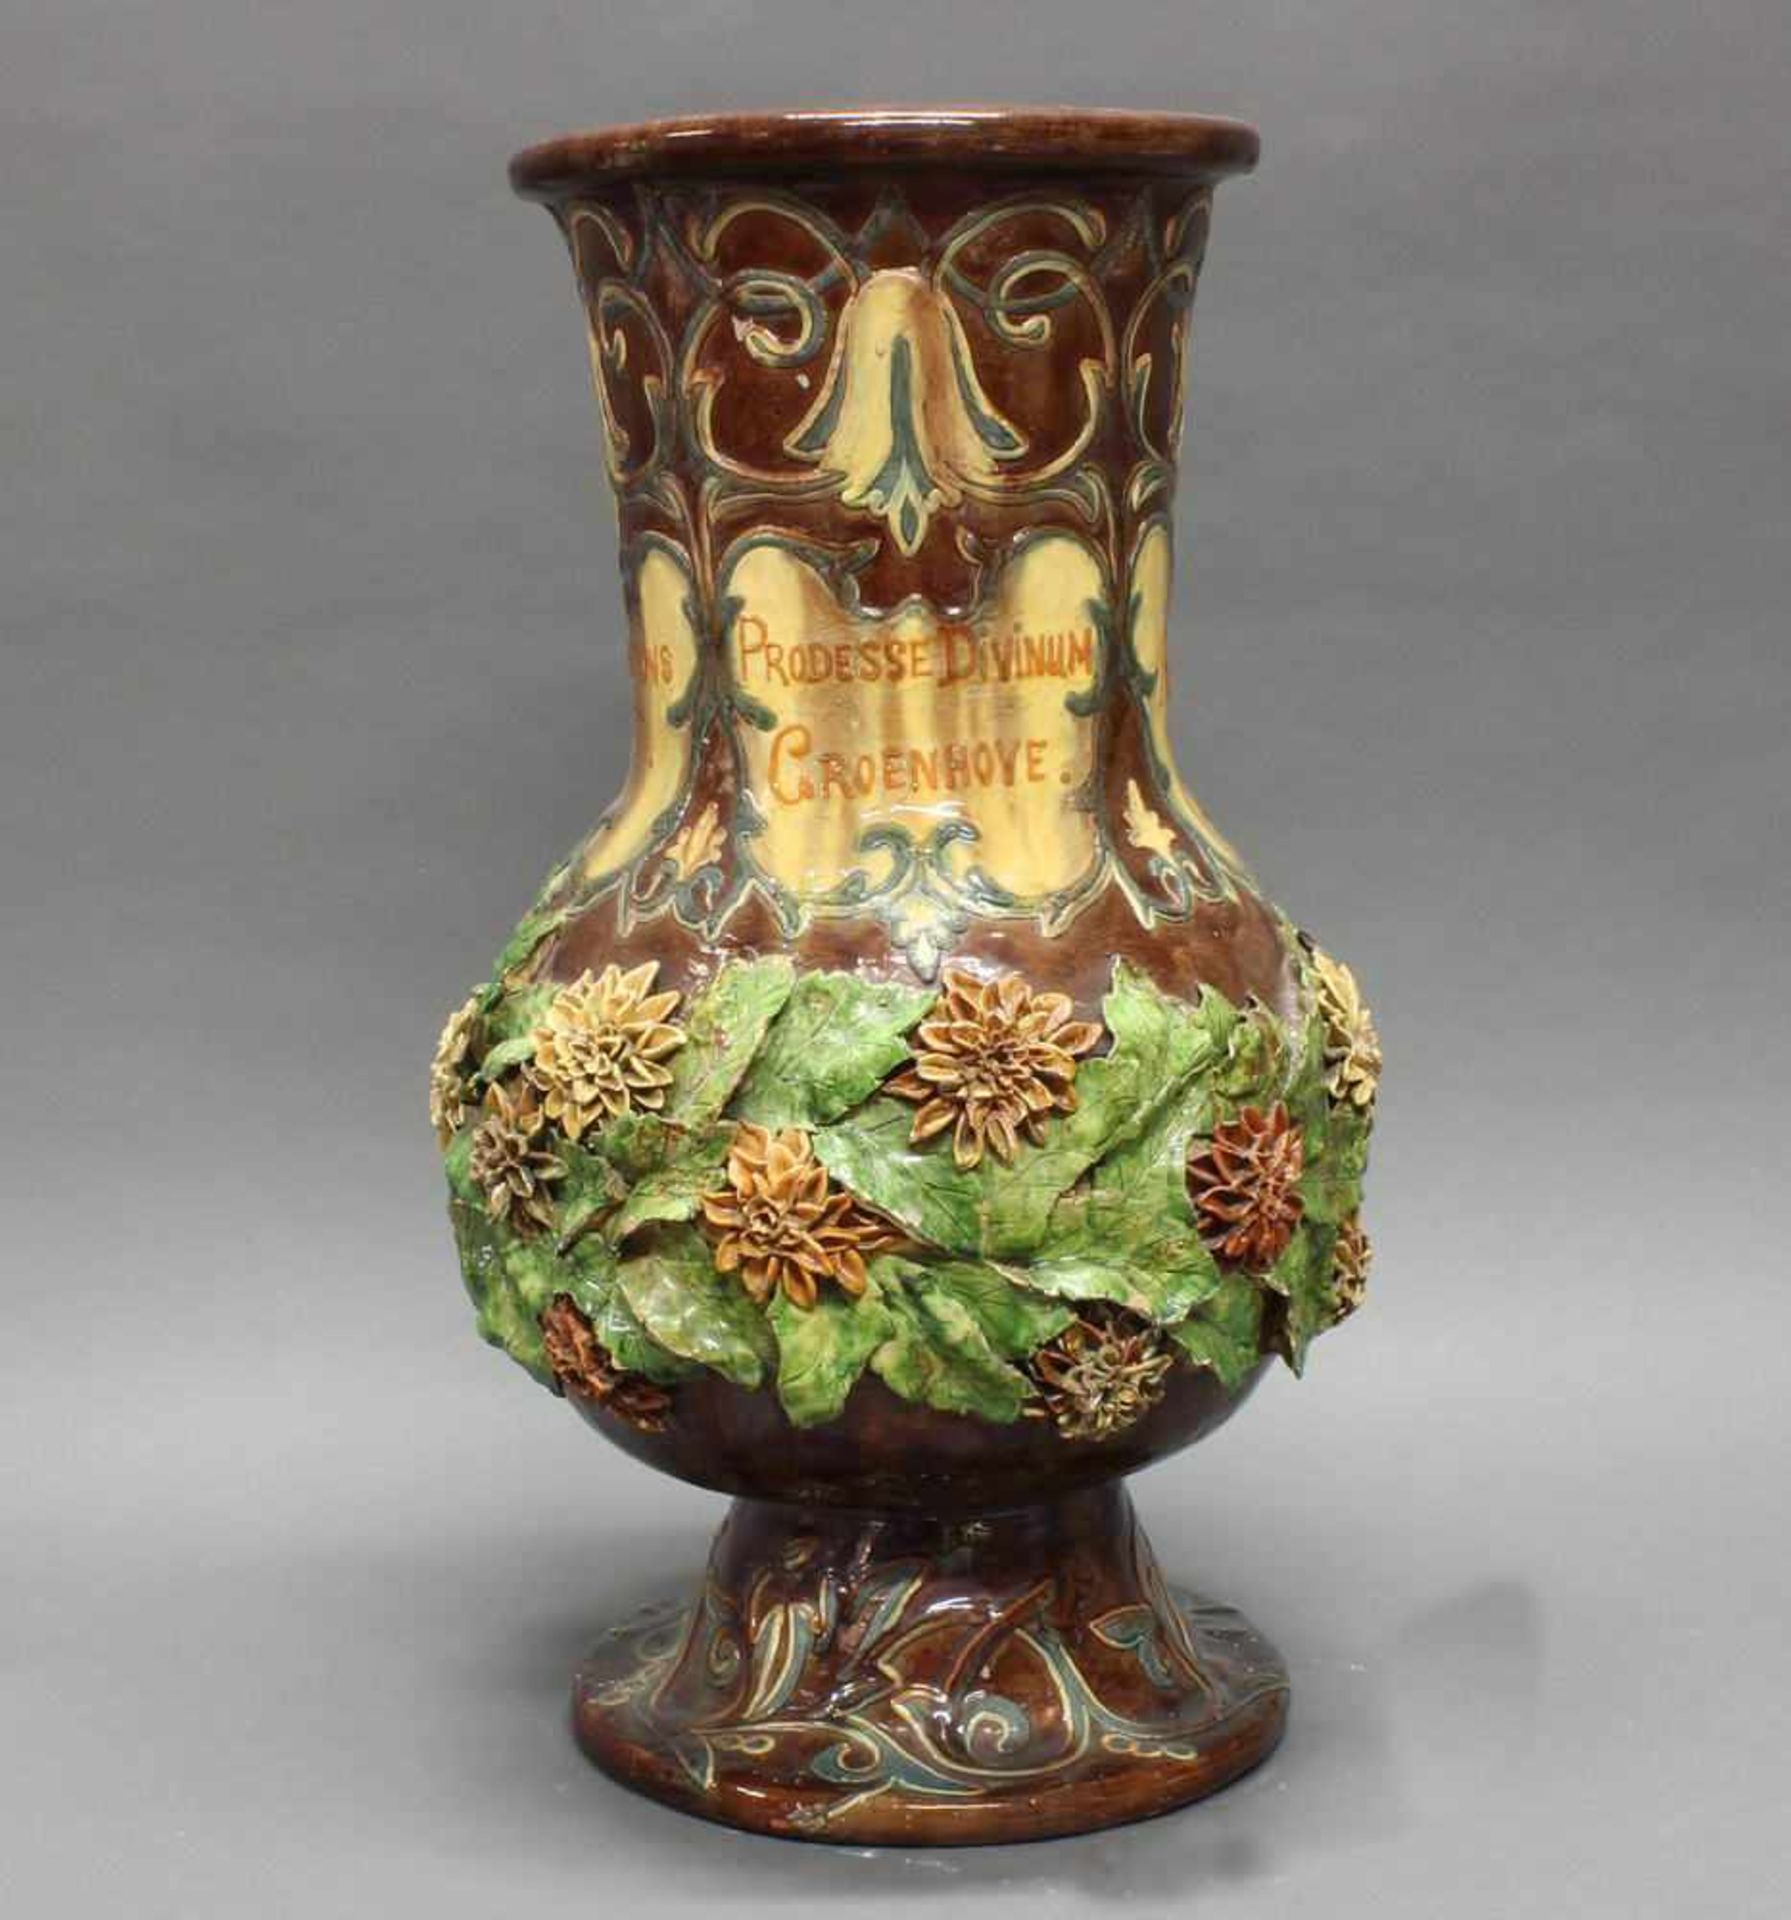 Vase, Keramik, Flandern, 1889, signiert L. Maes Thornhout 1889, polychrom, mit aufgesetzten Blüten - Image 6 of 10